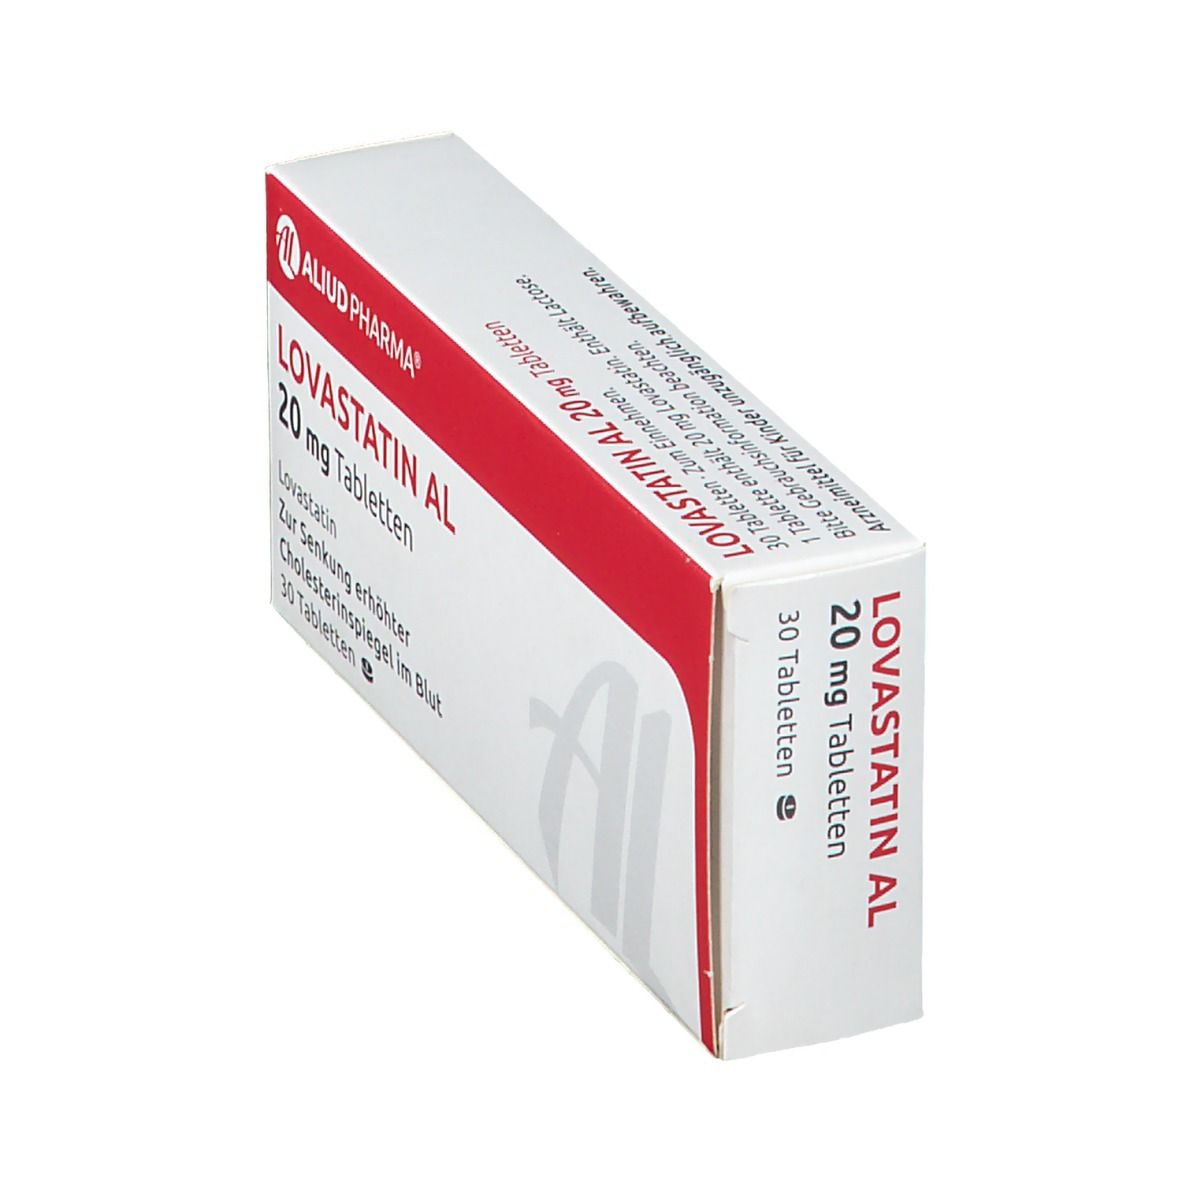 Lovastatin Al 20 mg